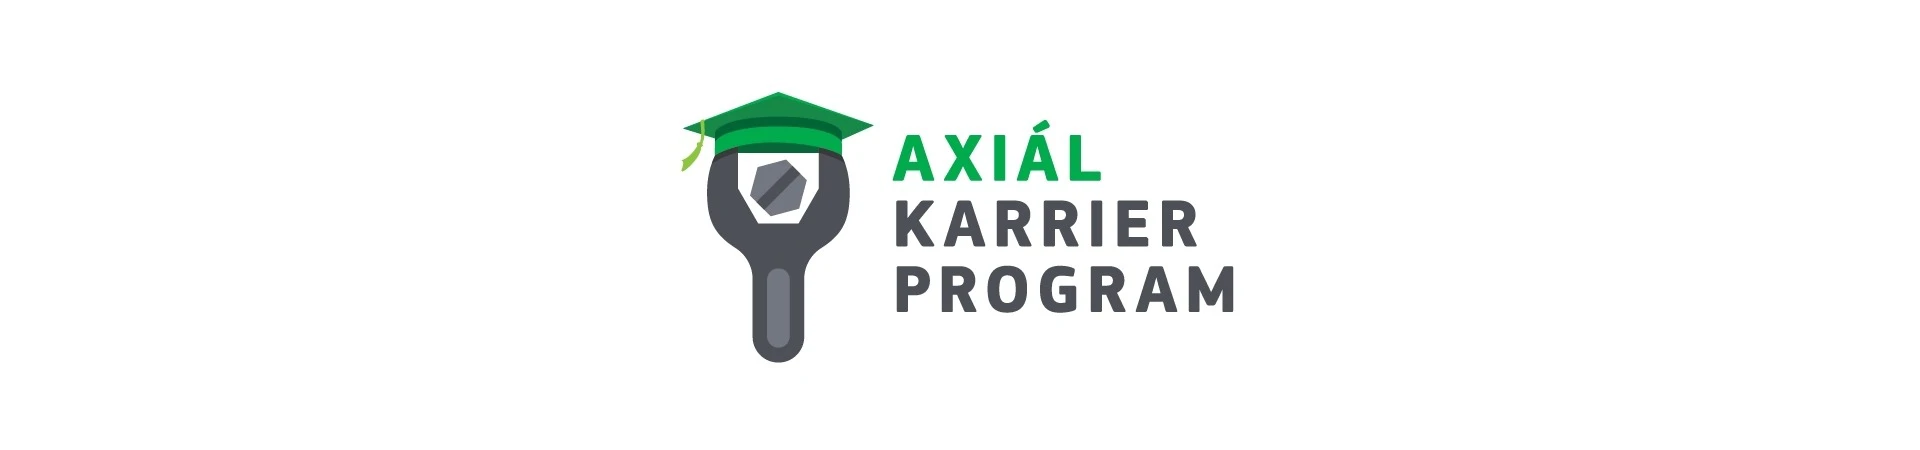 AXIÁL Karrier Program